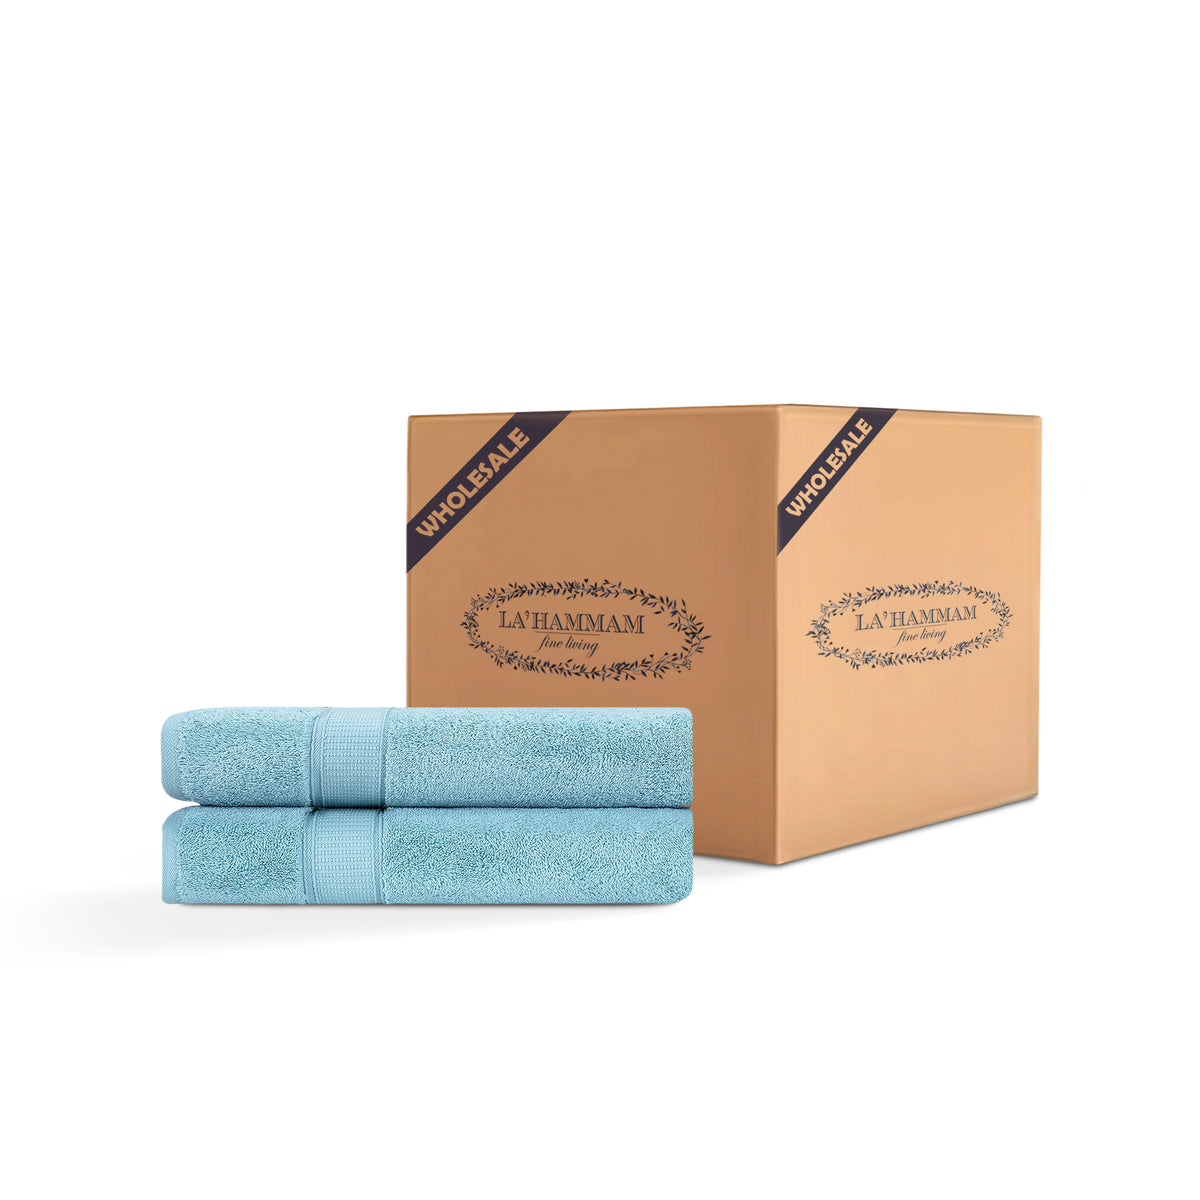 2 Piece Bath Towel Set - 12 Set Case Box